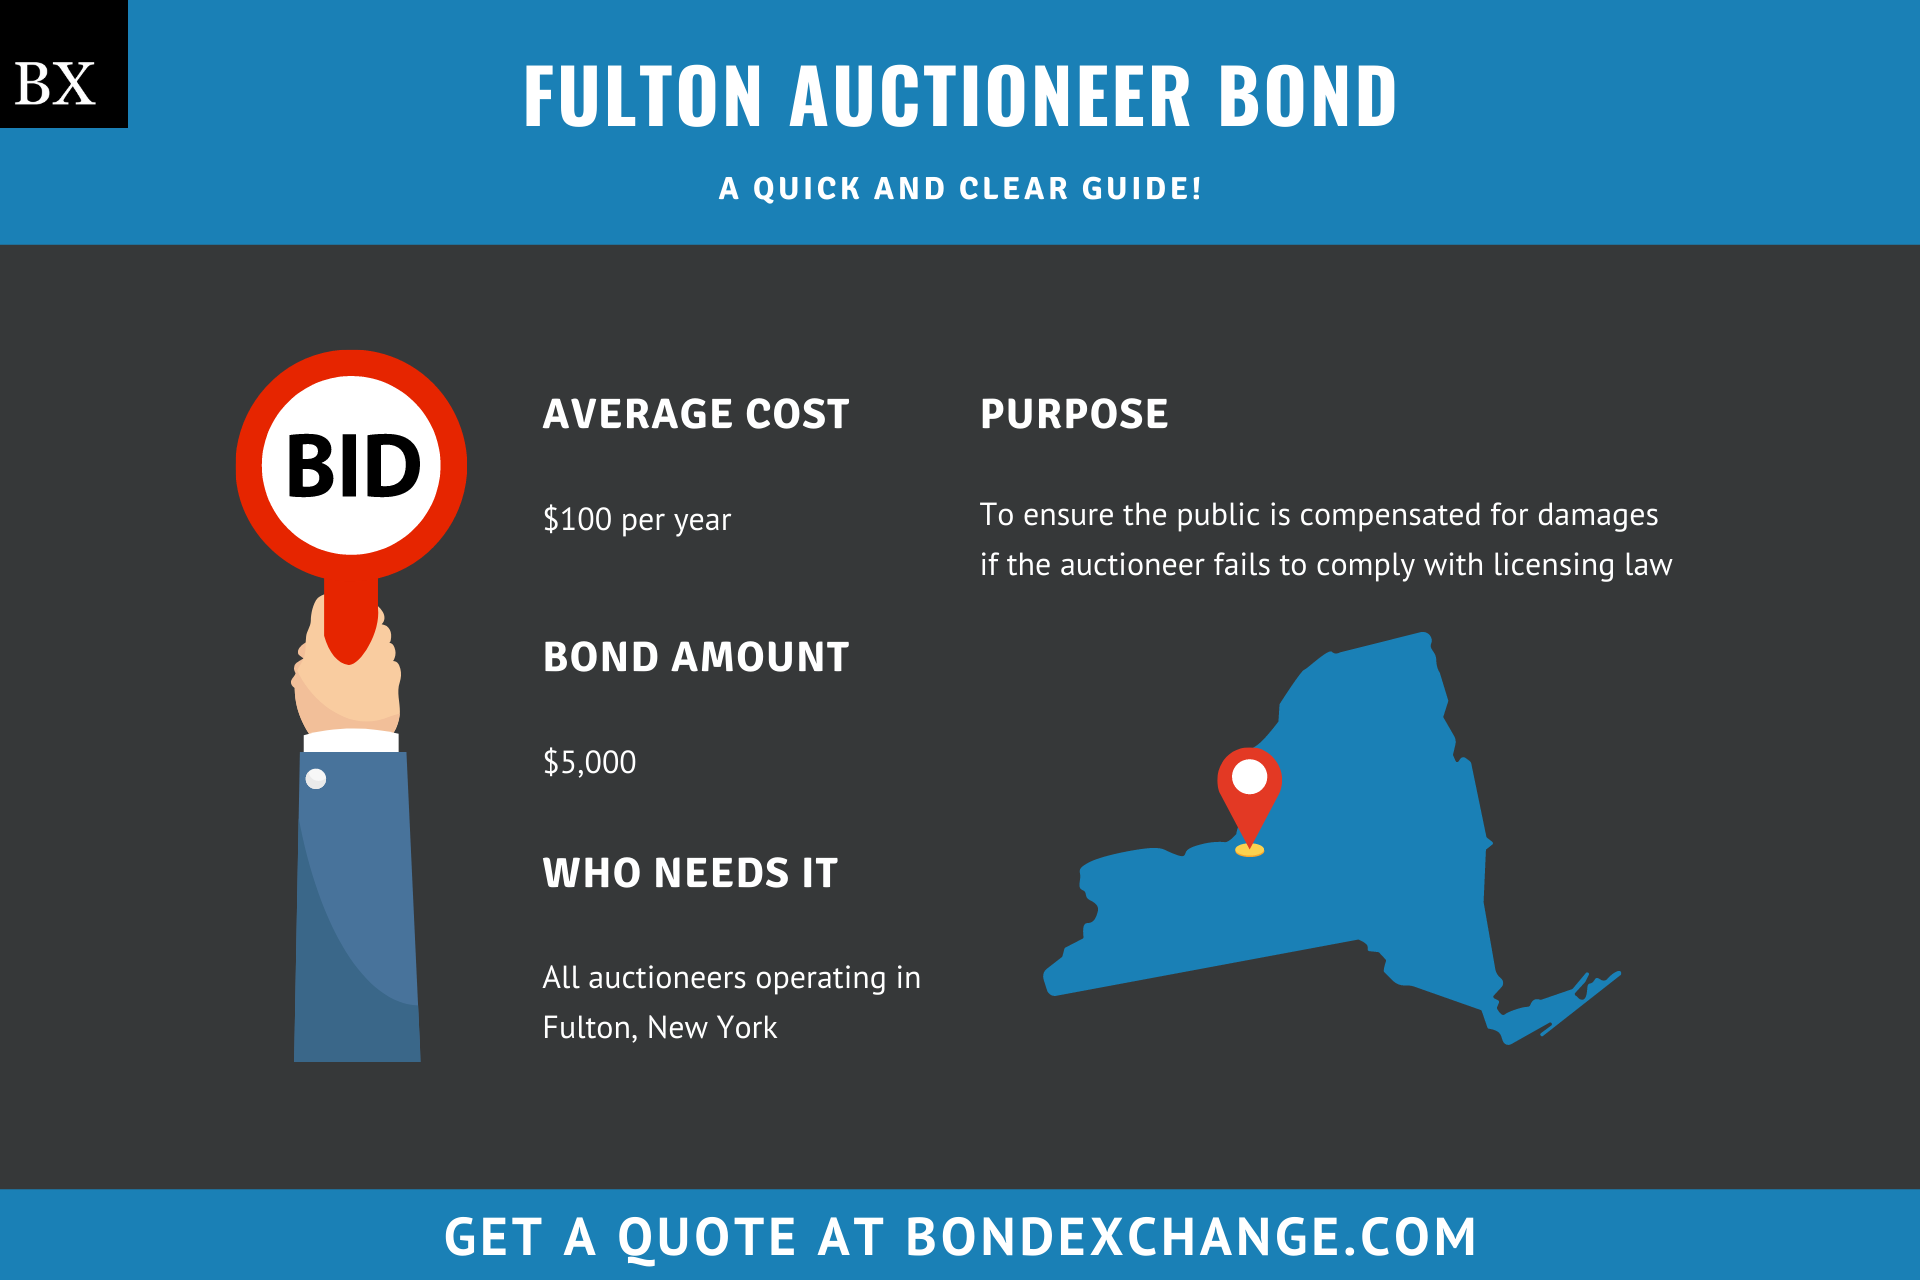 Fulton Auctioneer Bond